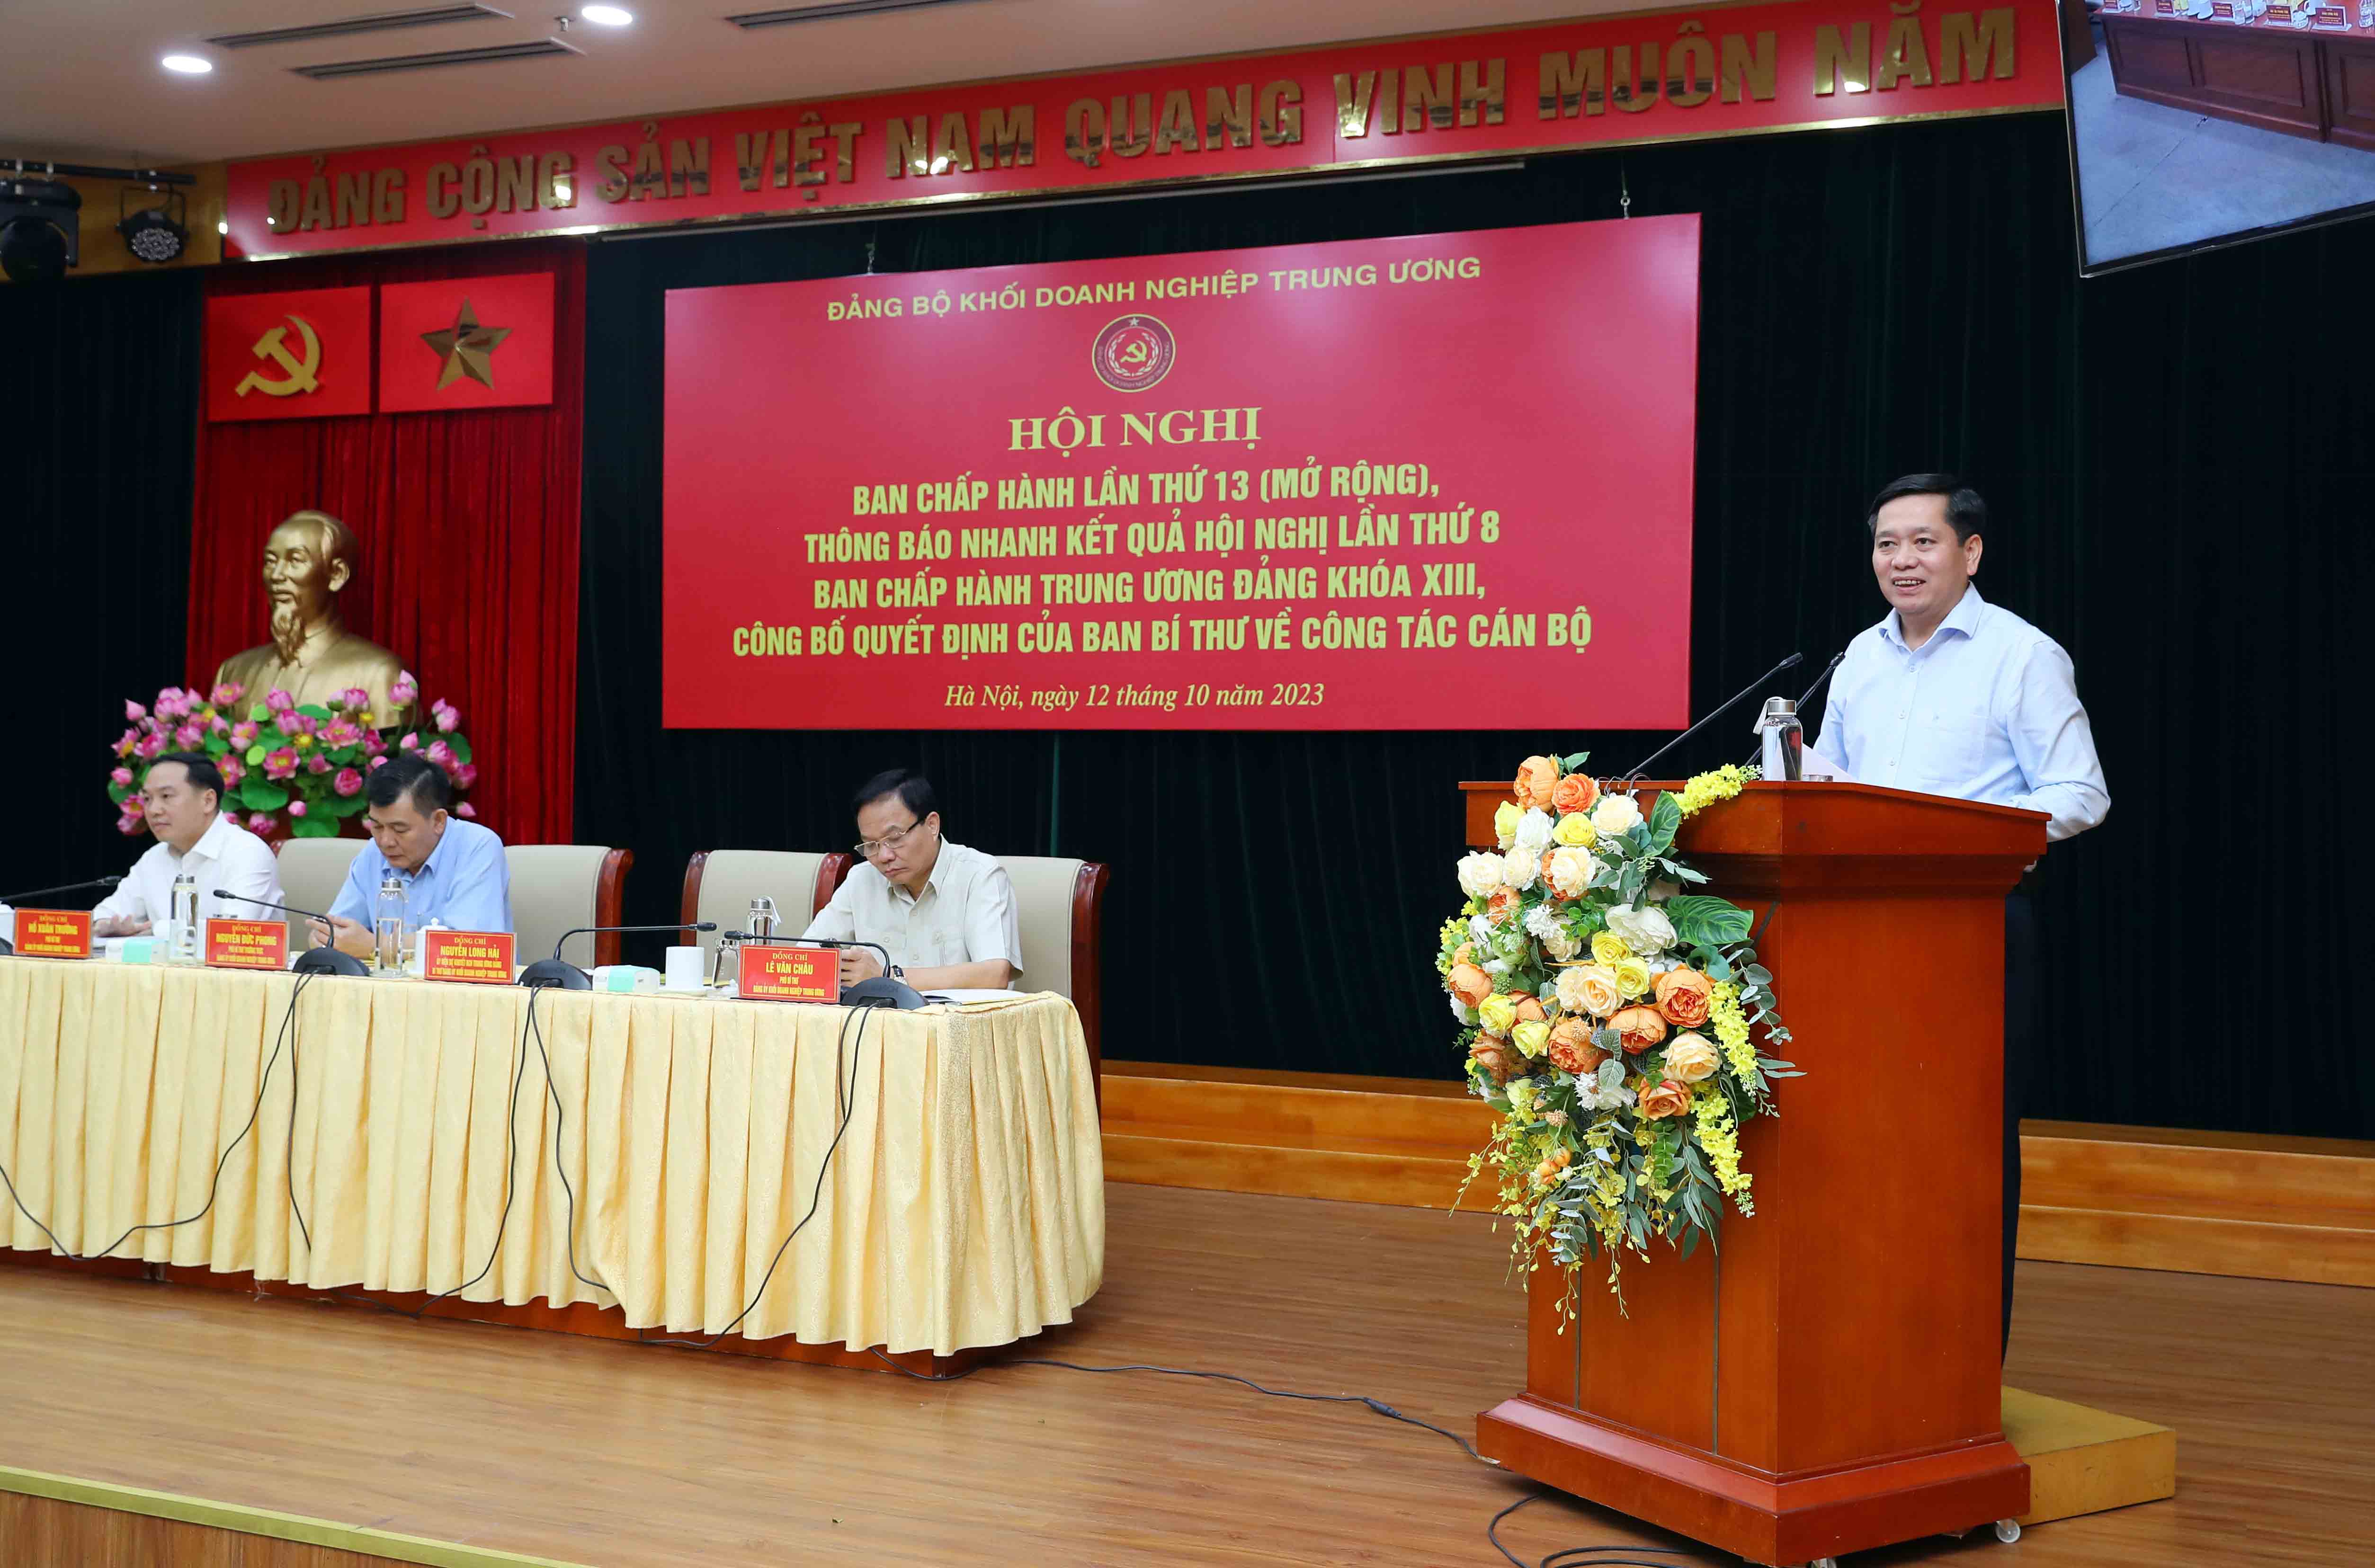 Đồng chí Nguyễn Long Hải, Ủy viên dự khuyết Ban Chấp hành Trung ương Đảng, Bí thư Đảng bộ Khối Doanh nghiệp Trung ương phát biểu. 